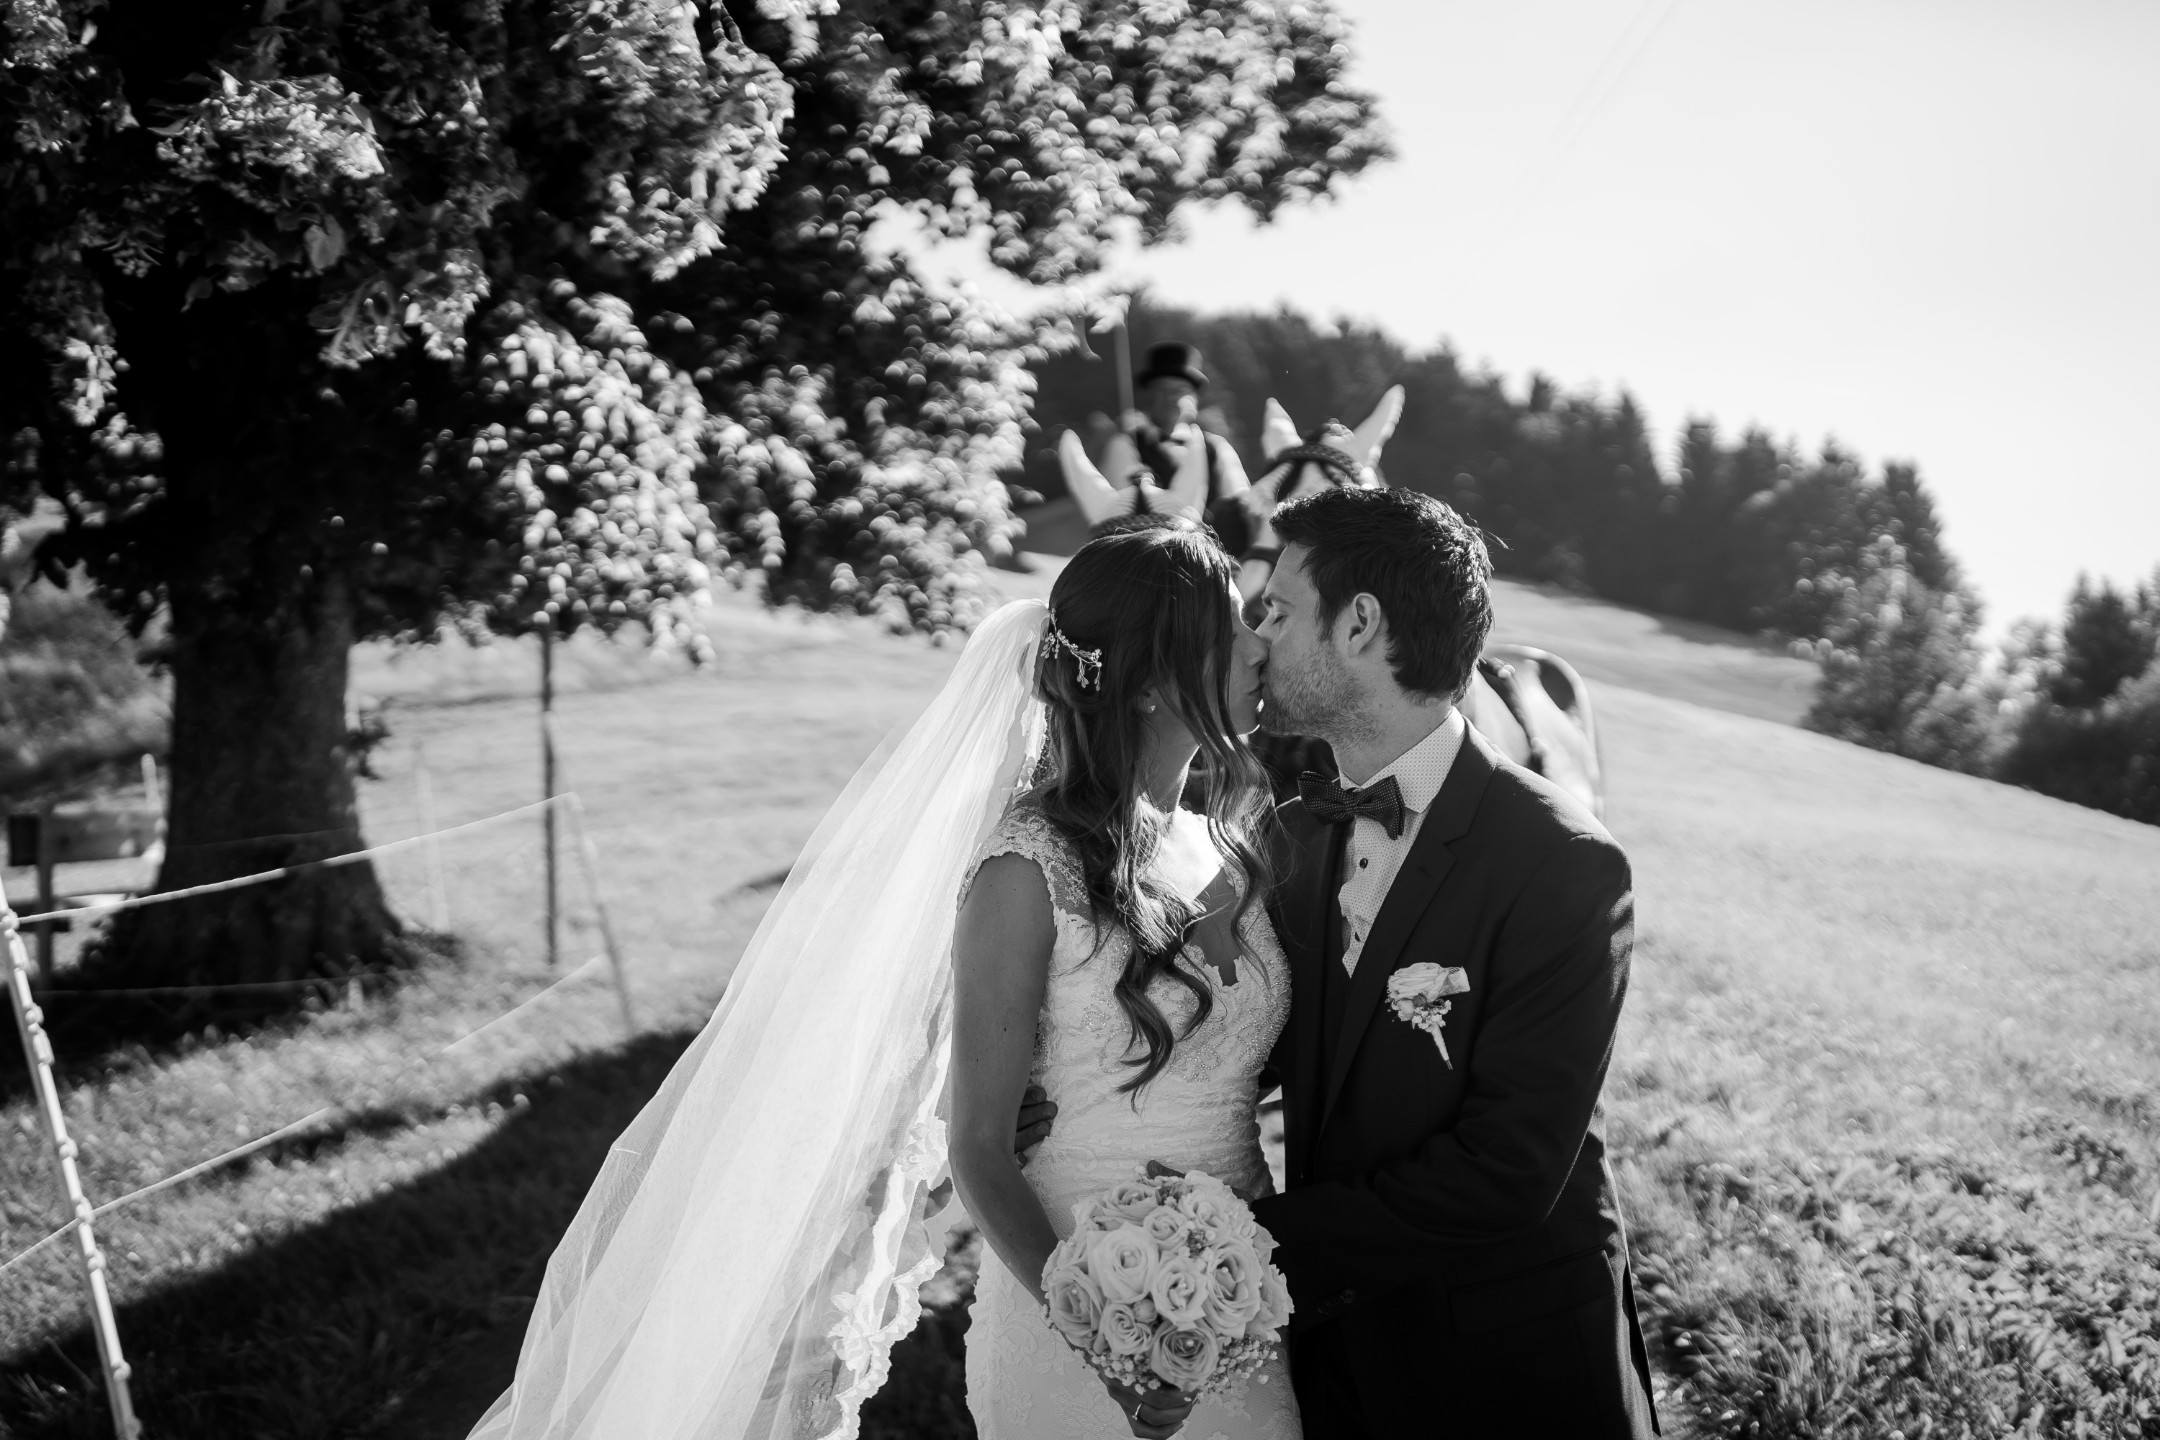 Aida + Tim | Hochzeitsfotografen am Bodensee Haldenhof Urnäsch, Schweiz  - Hochzeitsfotografie von Aida und Tim